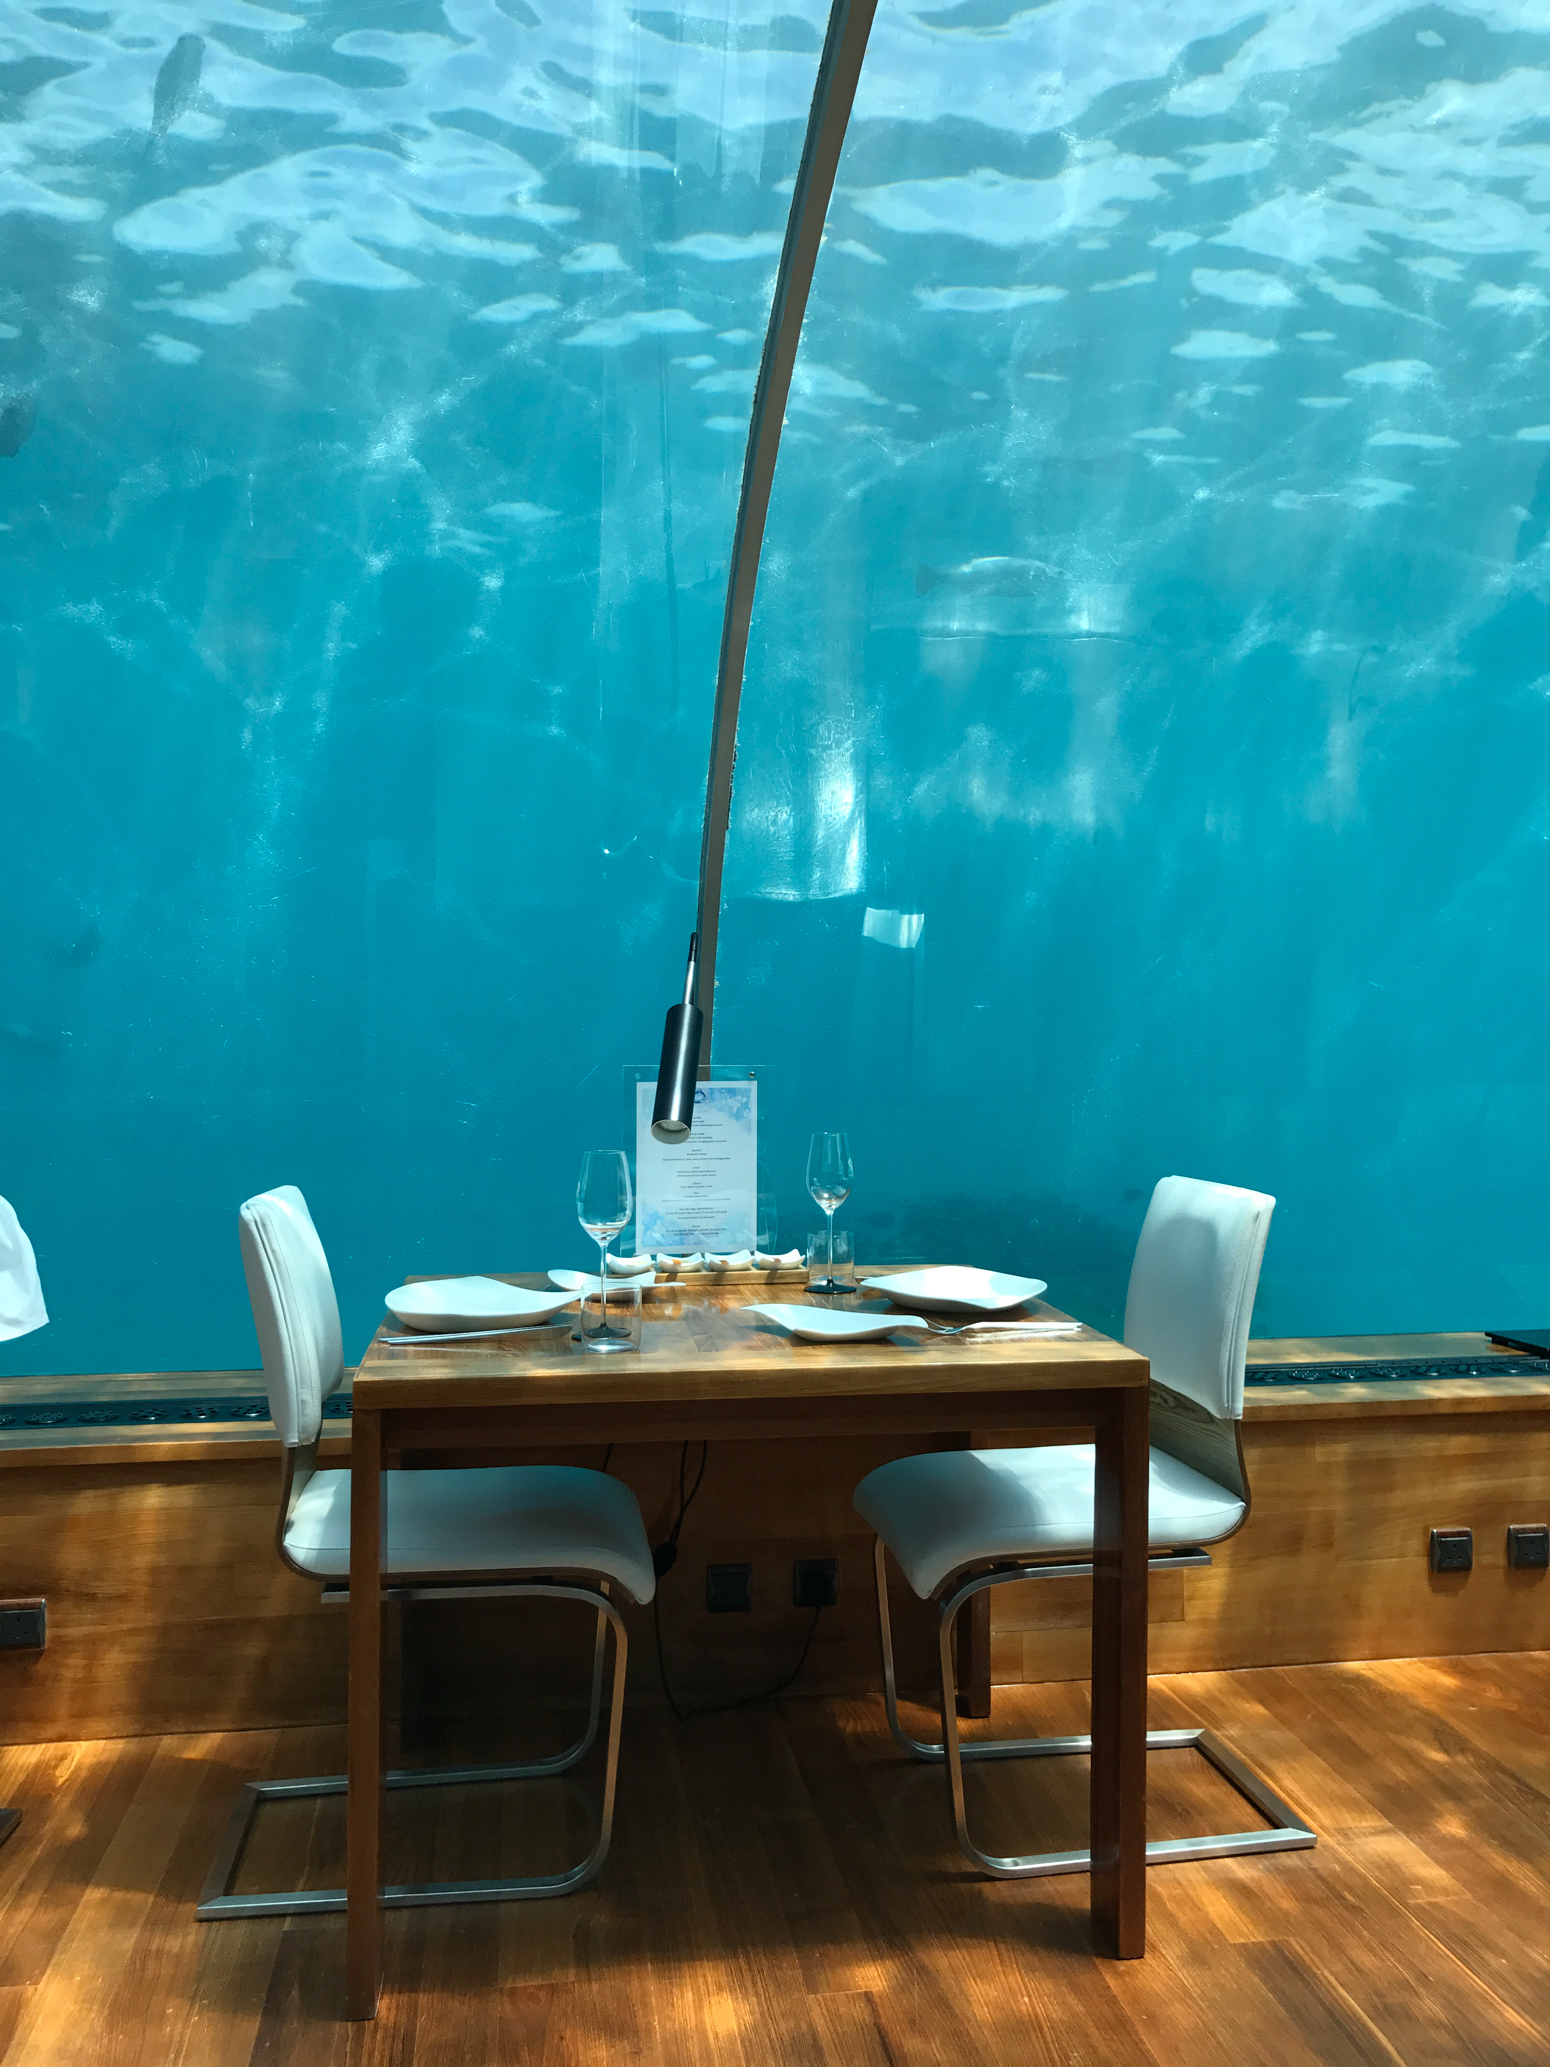 The Underwater Restaurant in Maldives | Blondie in the City